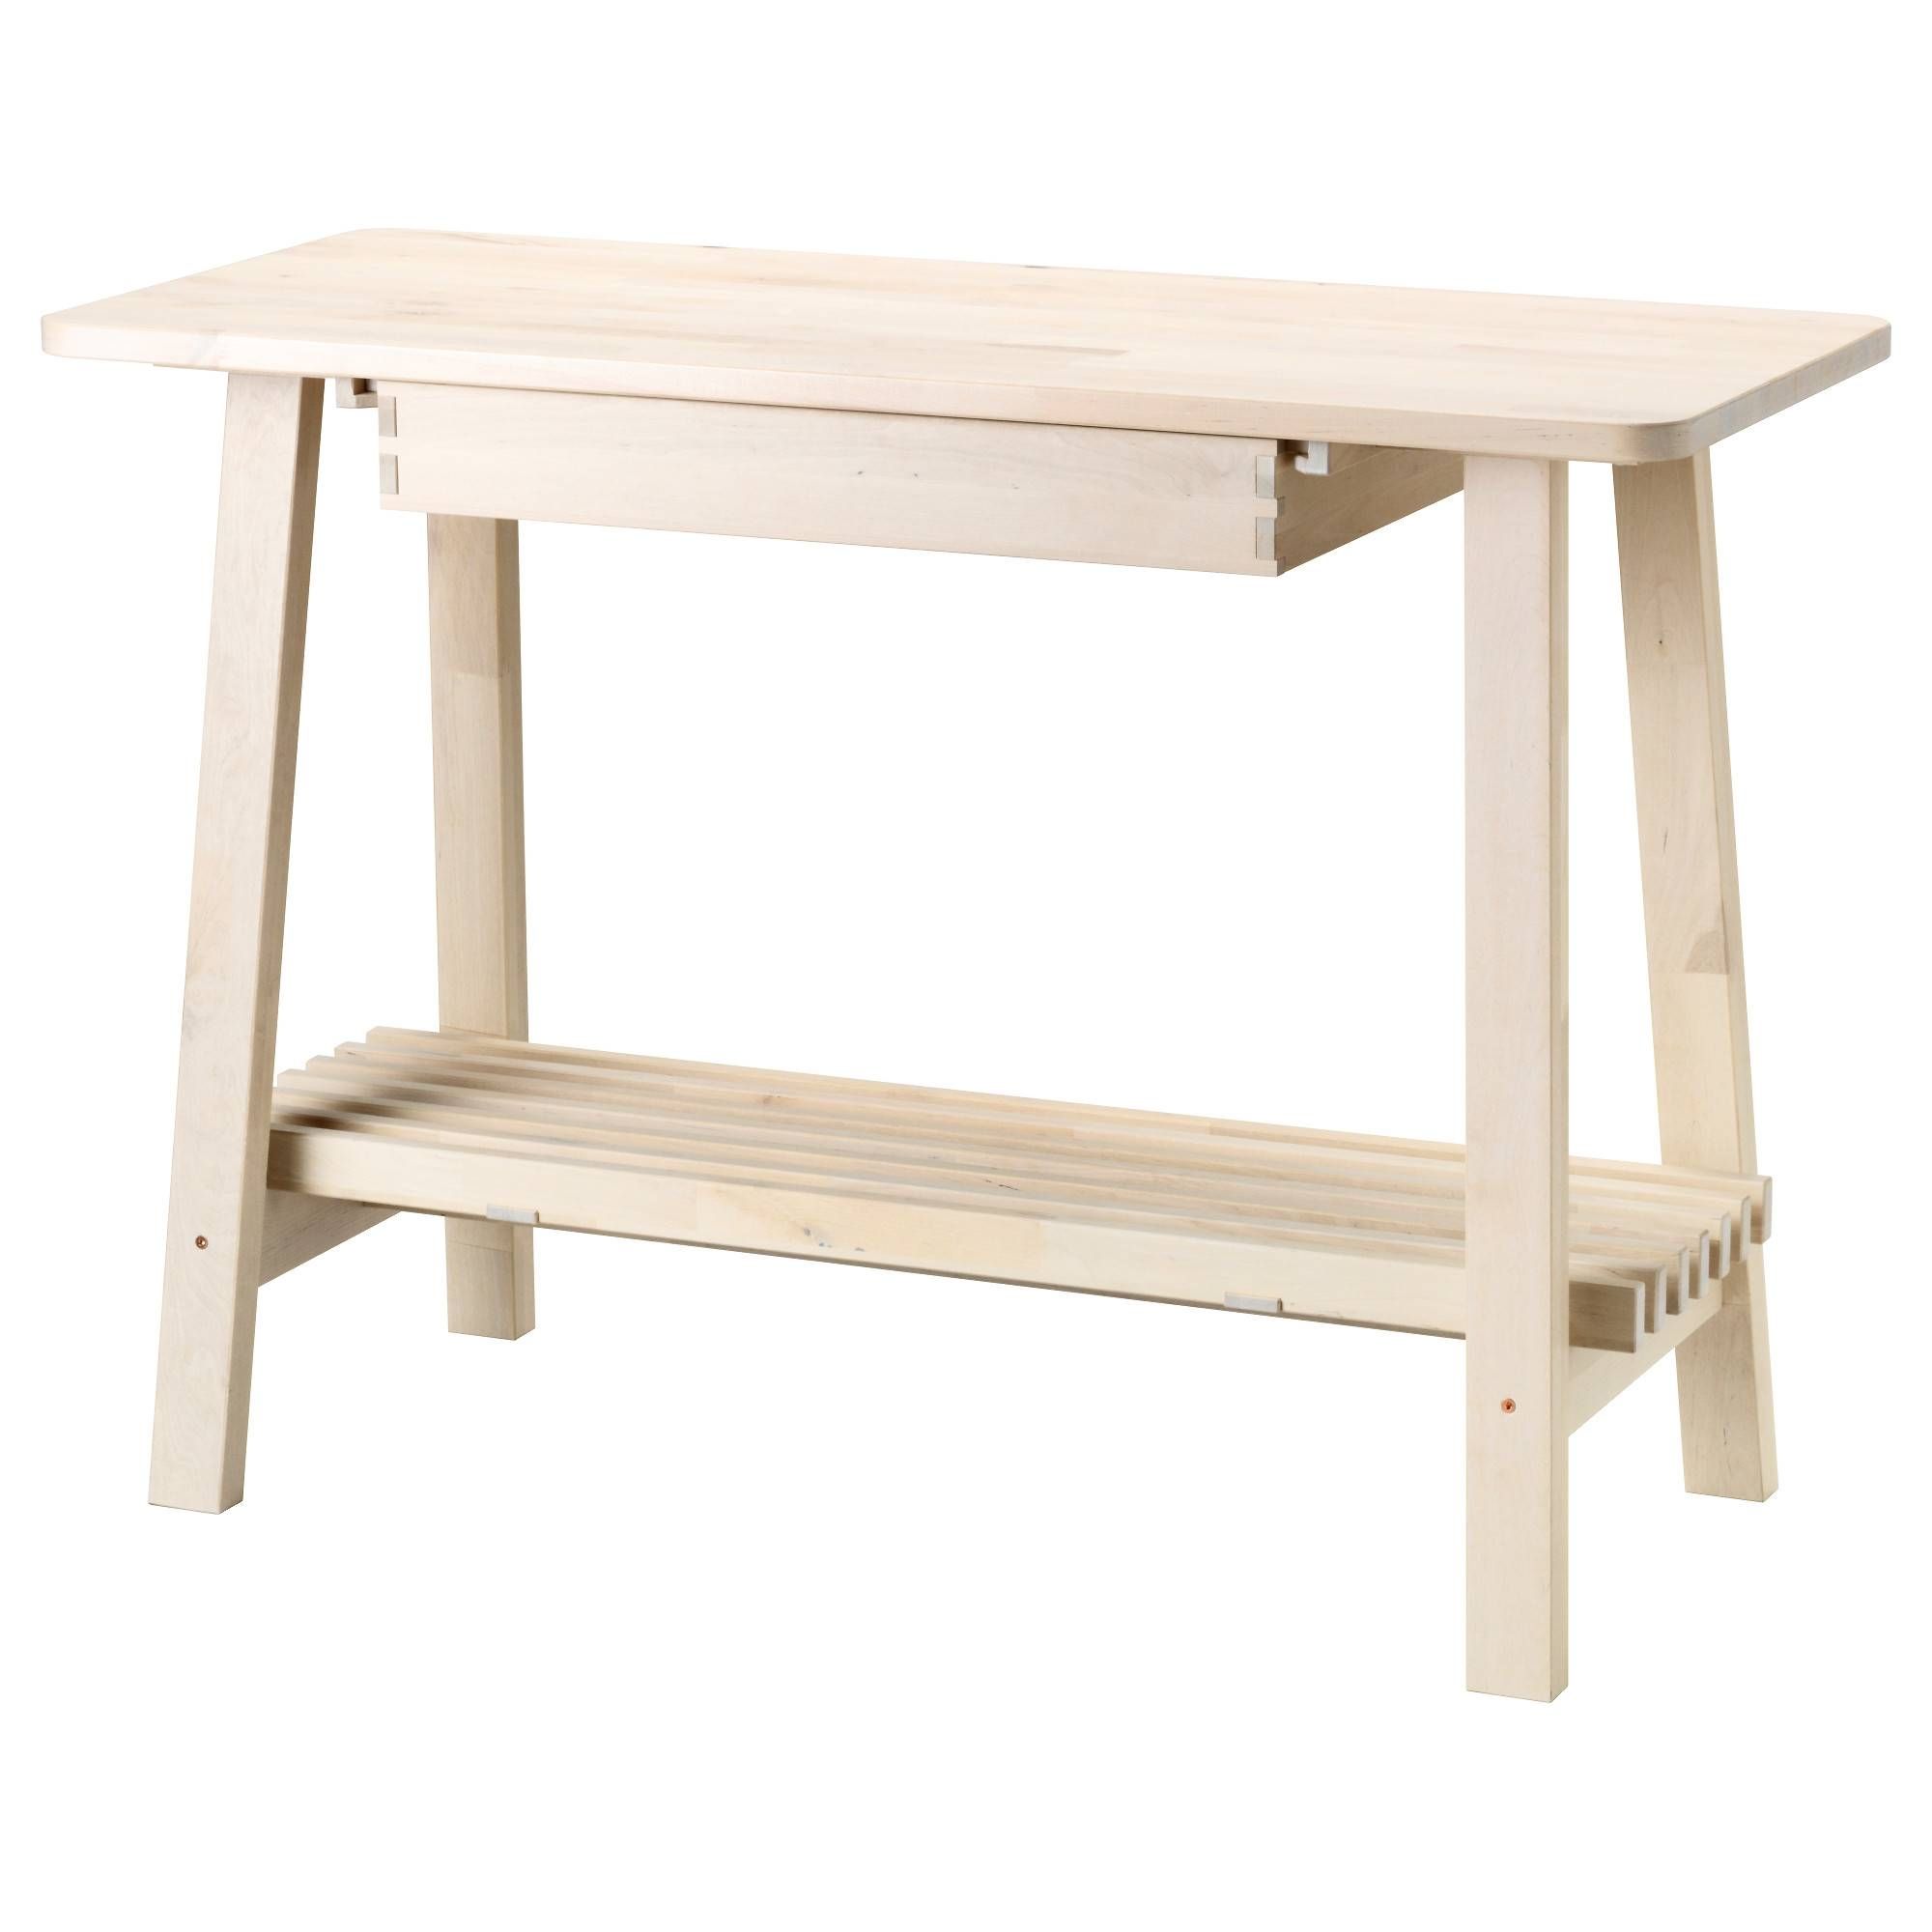 Norråker Sideboard White Birch 120x50 Cm – Ikea Regarding Sideboard Tables (Photo 12 of 15)